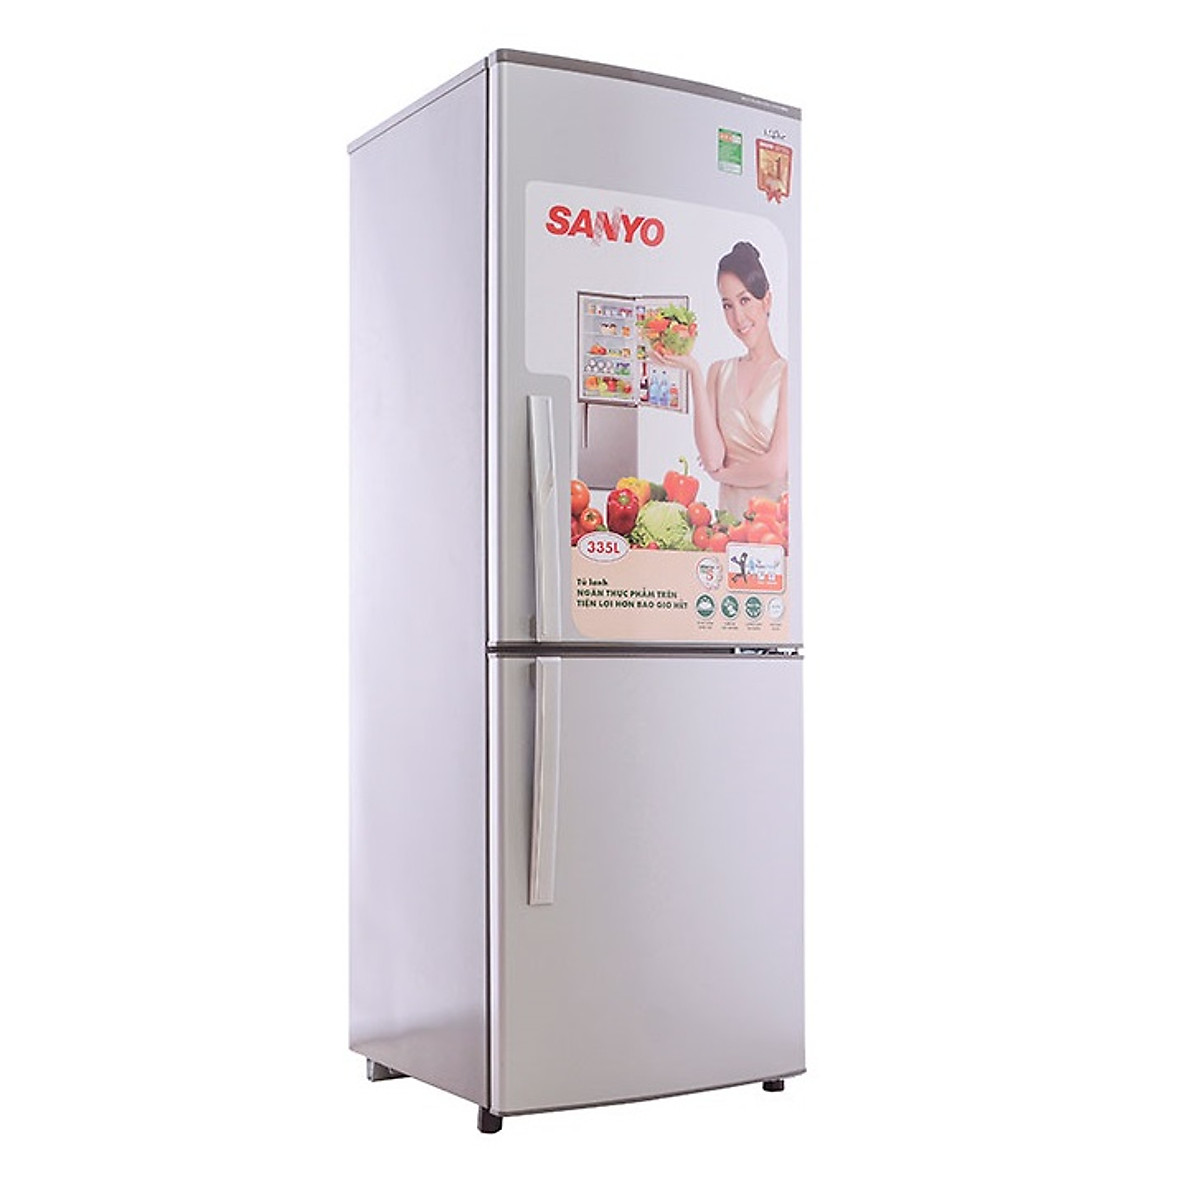 Tủ Lạnh Sanyo SR-345RB 335 lít - Hàng chính hãng